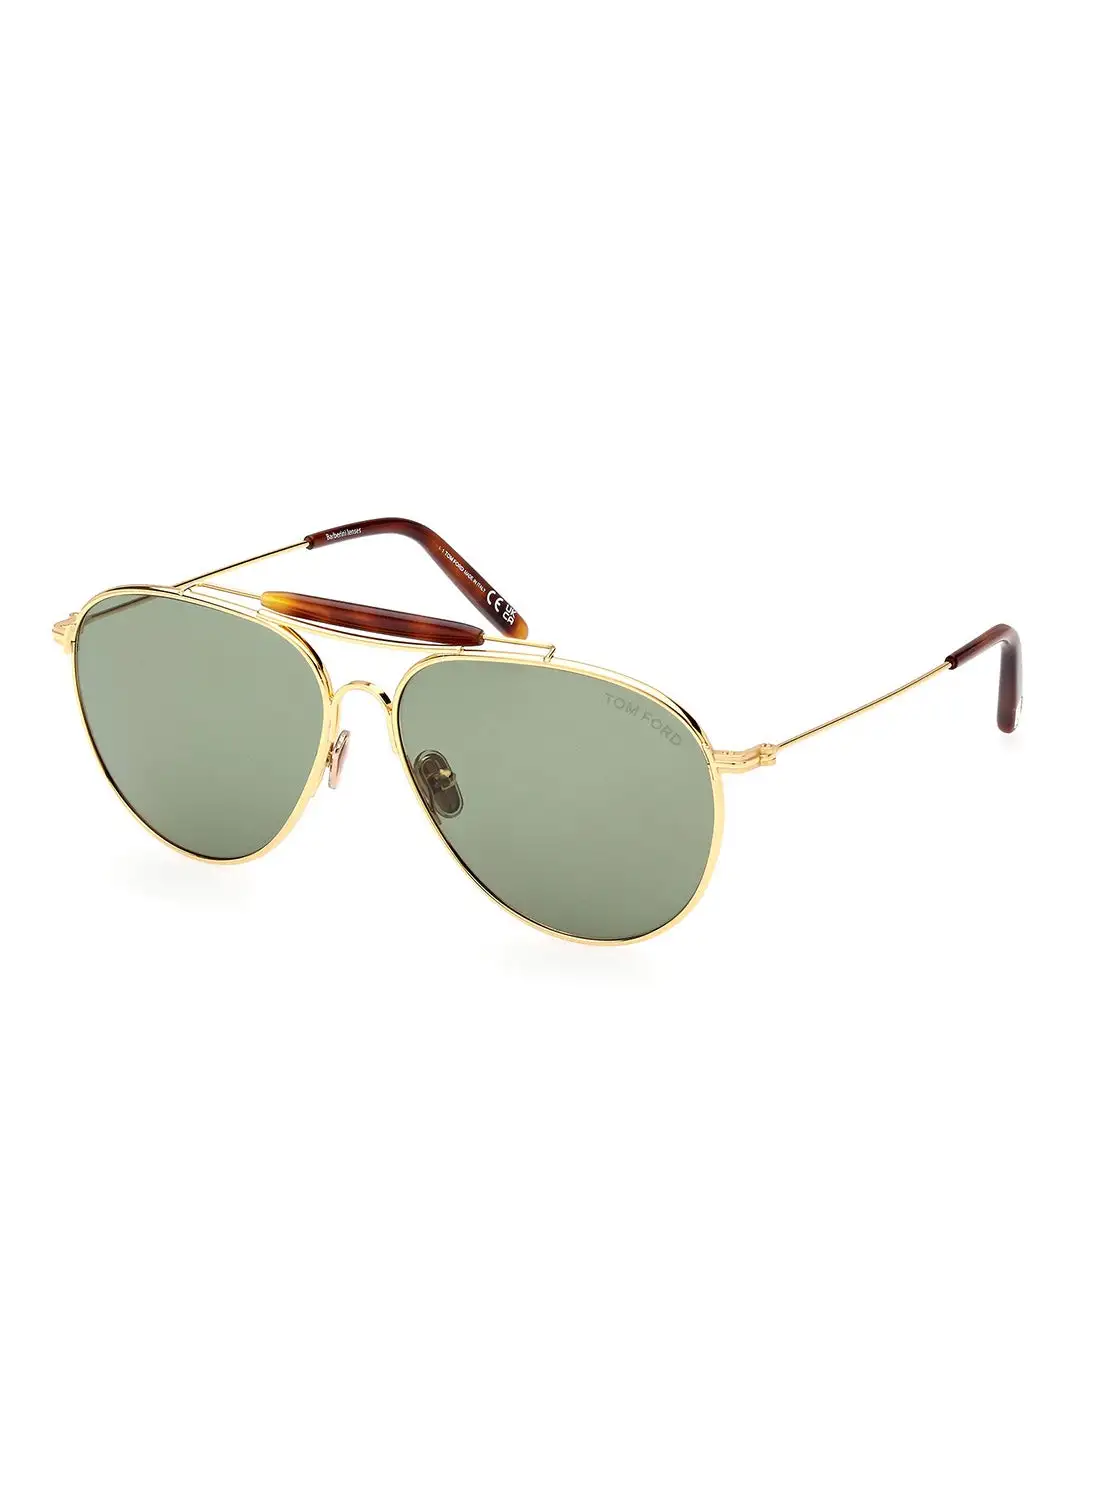 TOM FORD Men's UV Protection Pilot Sunglasses - FT099530N59 - Lens Size: 59 Mm